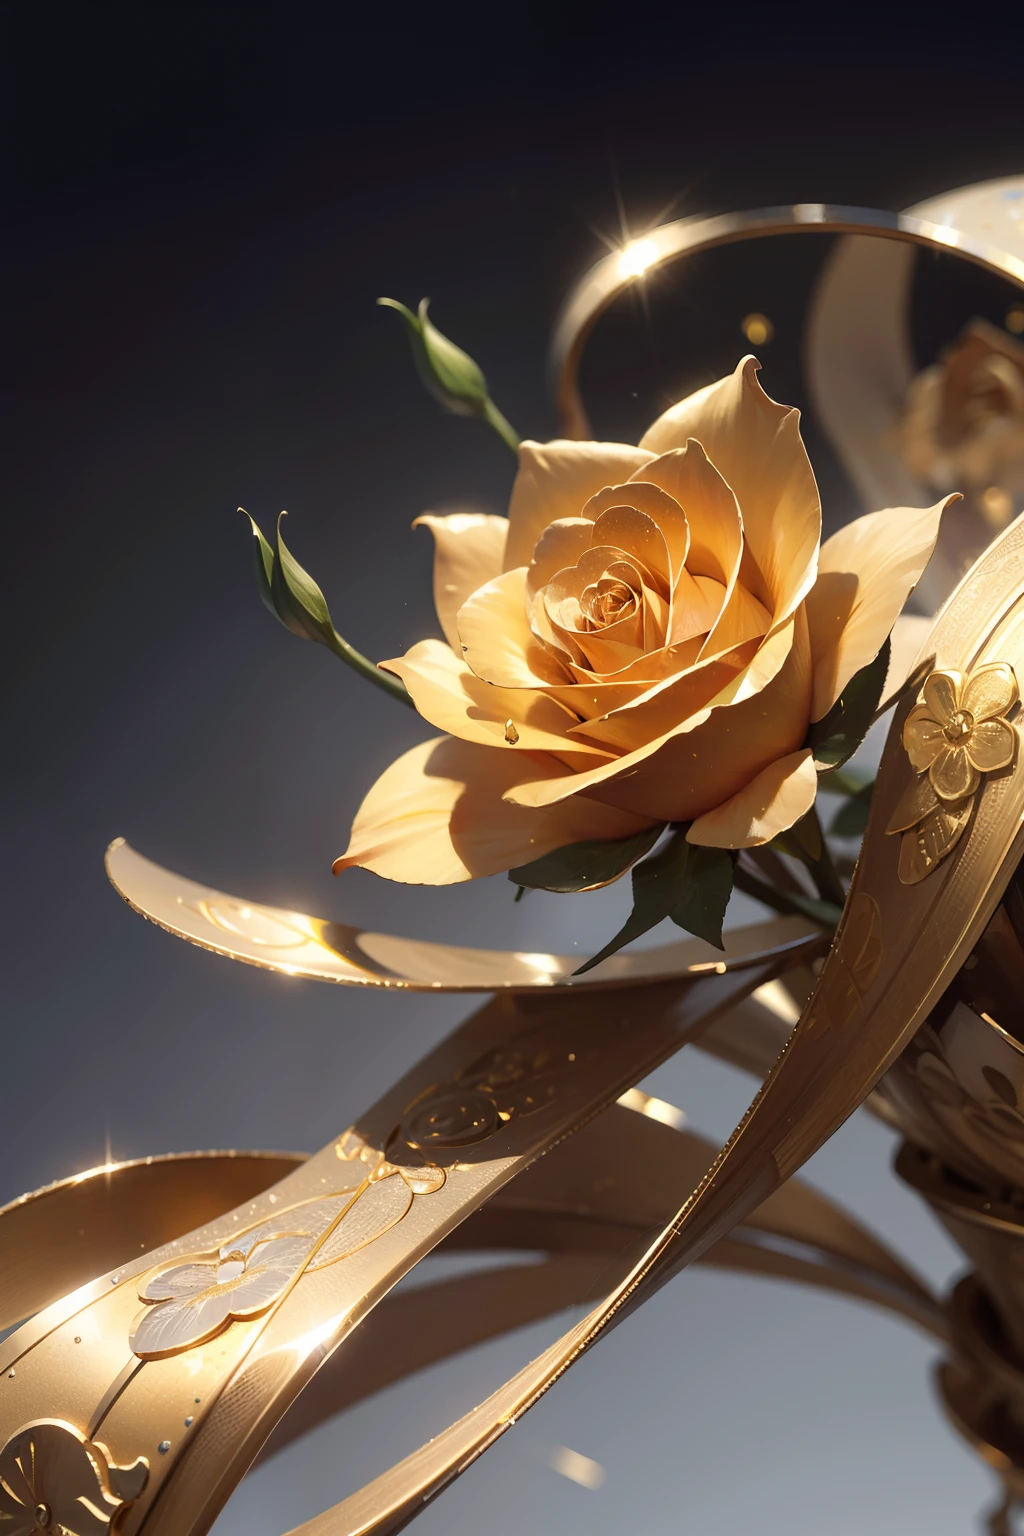 풀 골든 올메탈 장미 1개，꽃잎이 연결되어 다리를 이룬다.，금속 질감，모든 금속，골드 부품，금속 반사재，황금빛 꽃，슈퍼 디테일링，매우 선명한 이미지 품질，단색 배경